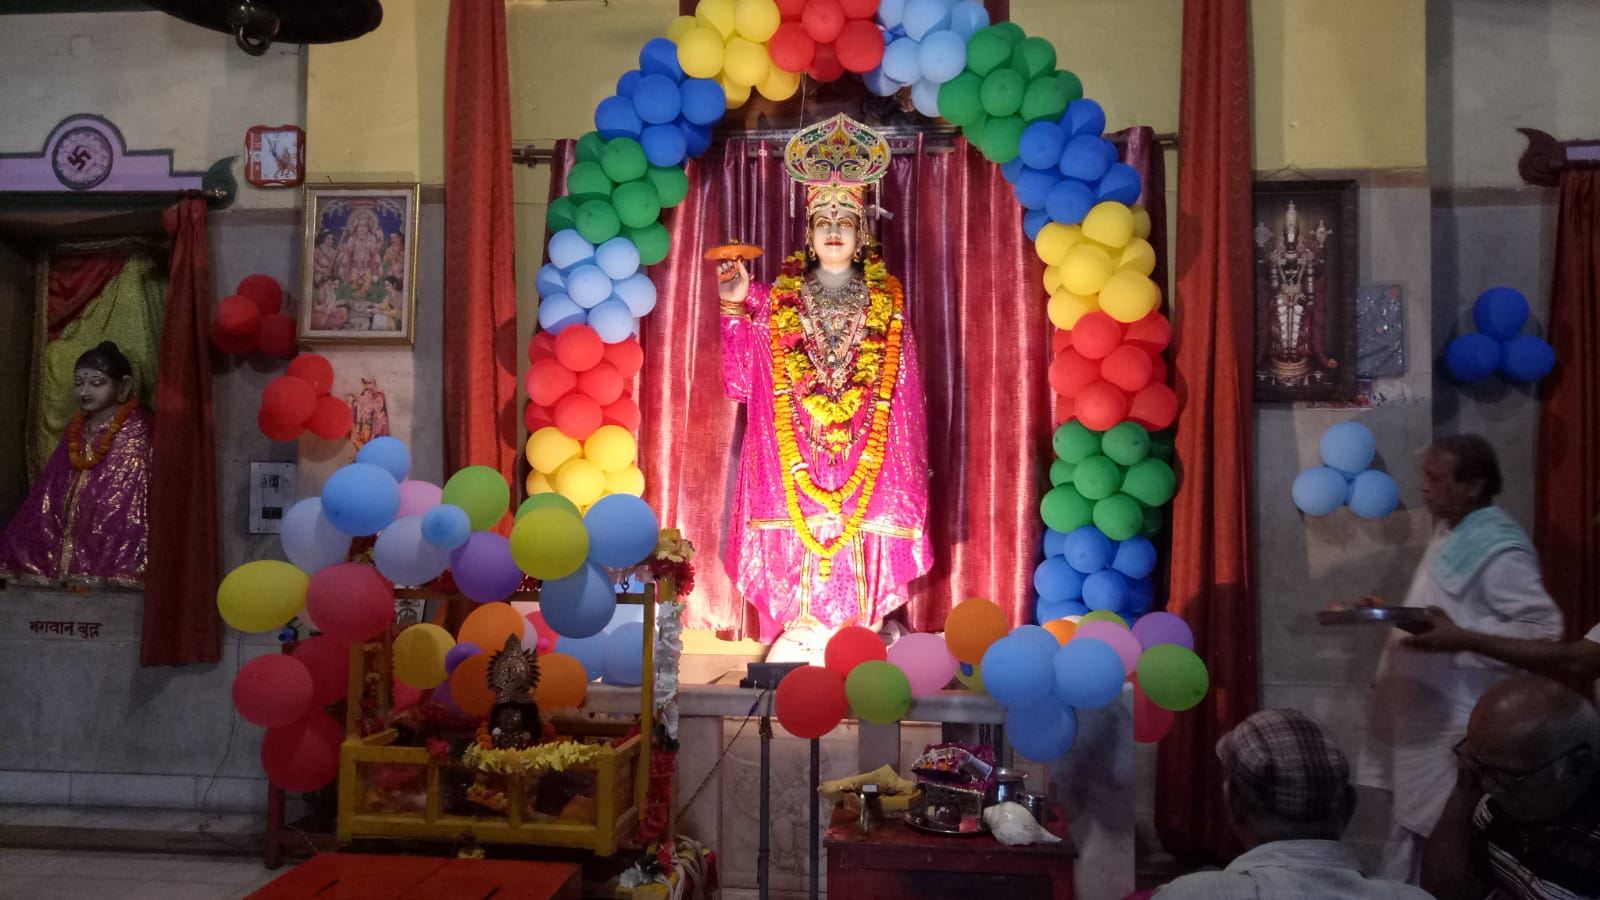 हरिद्वार के प्रमुख भगवान विष्णु के मन्दिर गीता भवन में श्री कृष्ण जन्माष्टमी का उत्सव धूमधाम से मनाया गया।